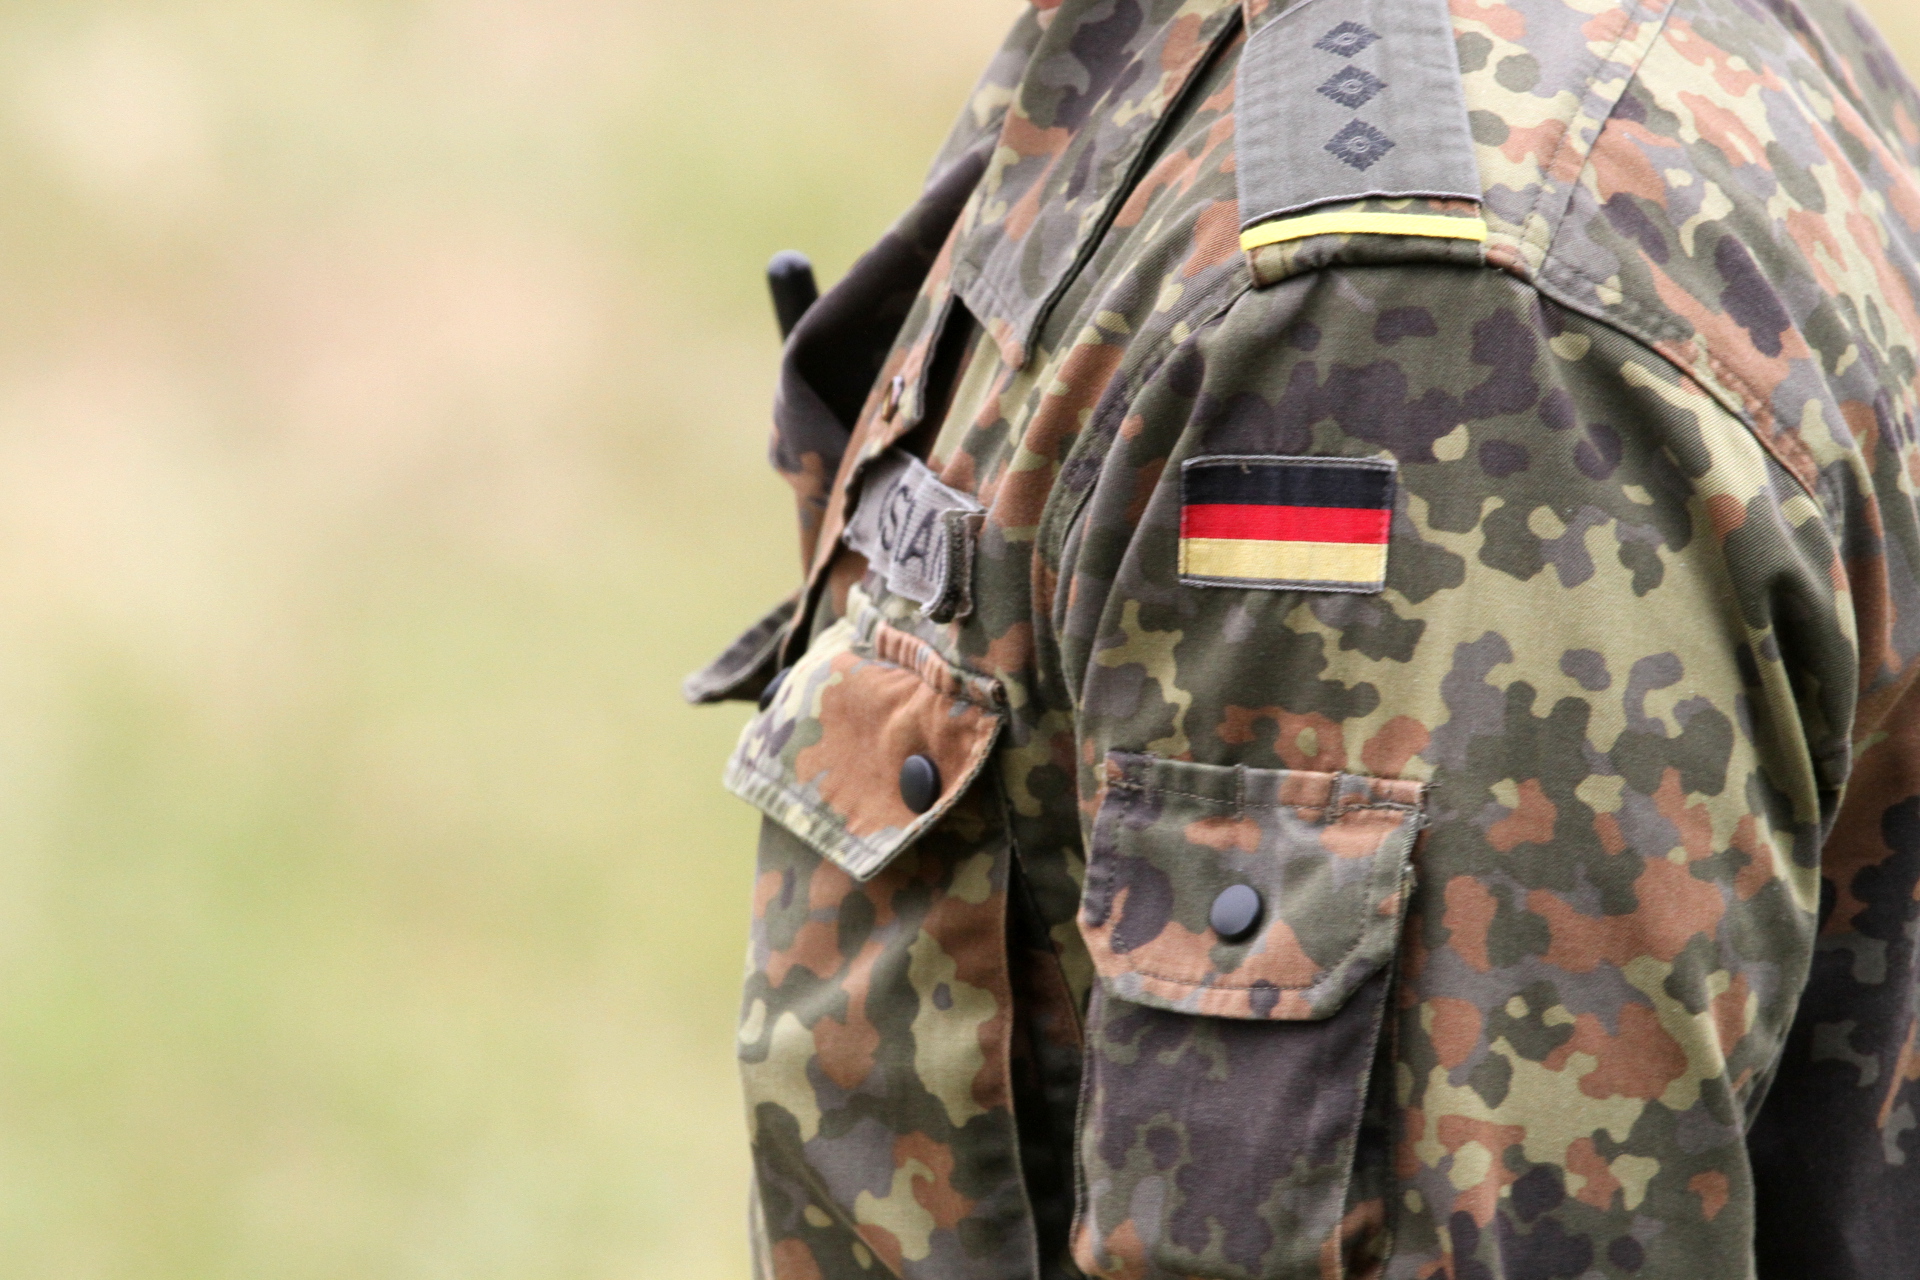 Hilfsorganisation: Berlin darf Anti-IS-Koalition nicht verlassen | Zaronews